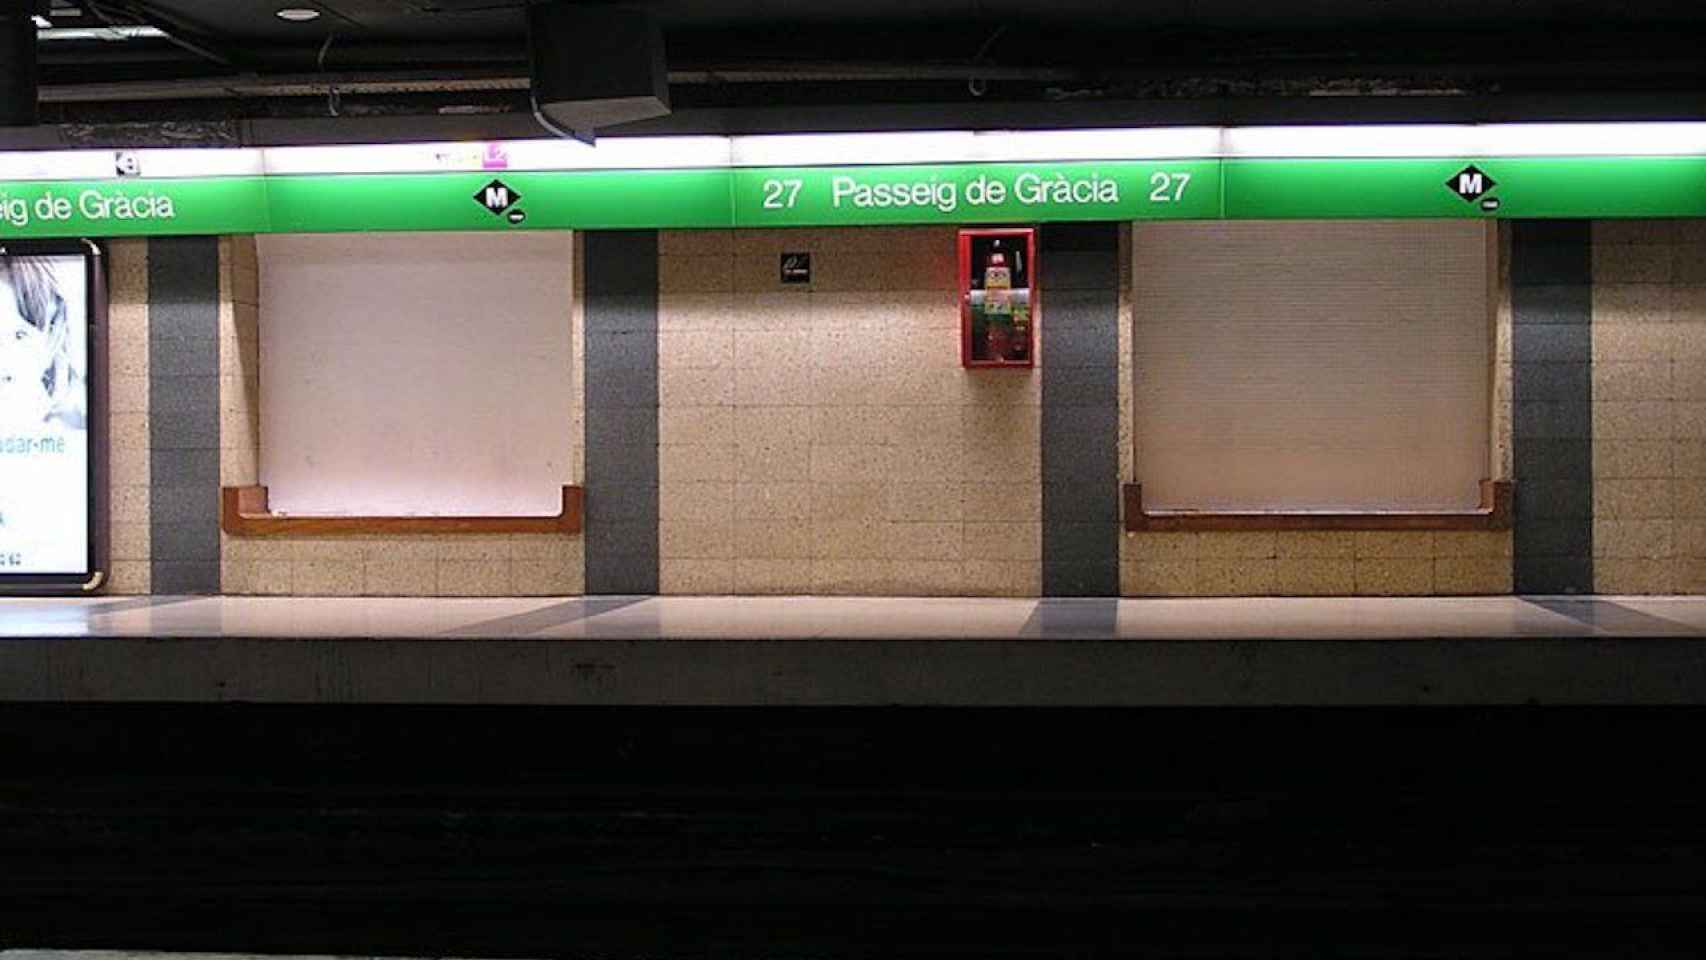 La estación de metro de la L3 del Passeig de Gràcia / BCNHELPERS